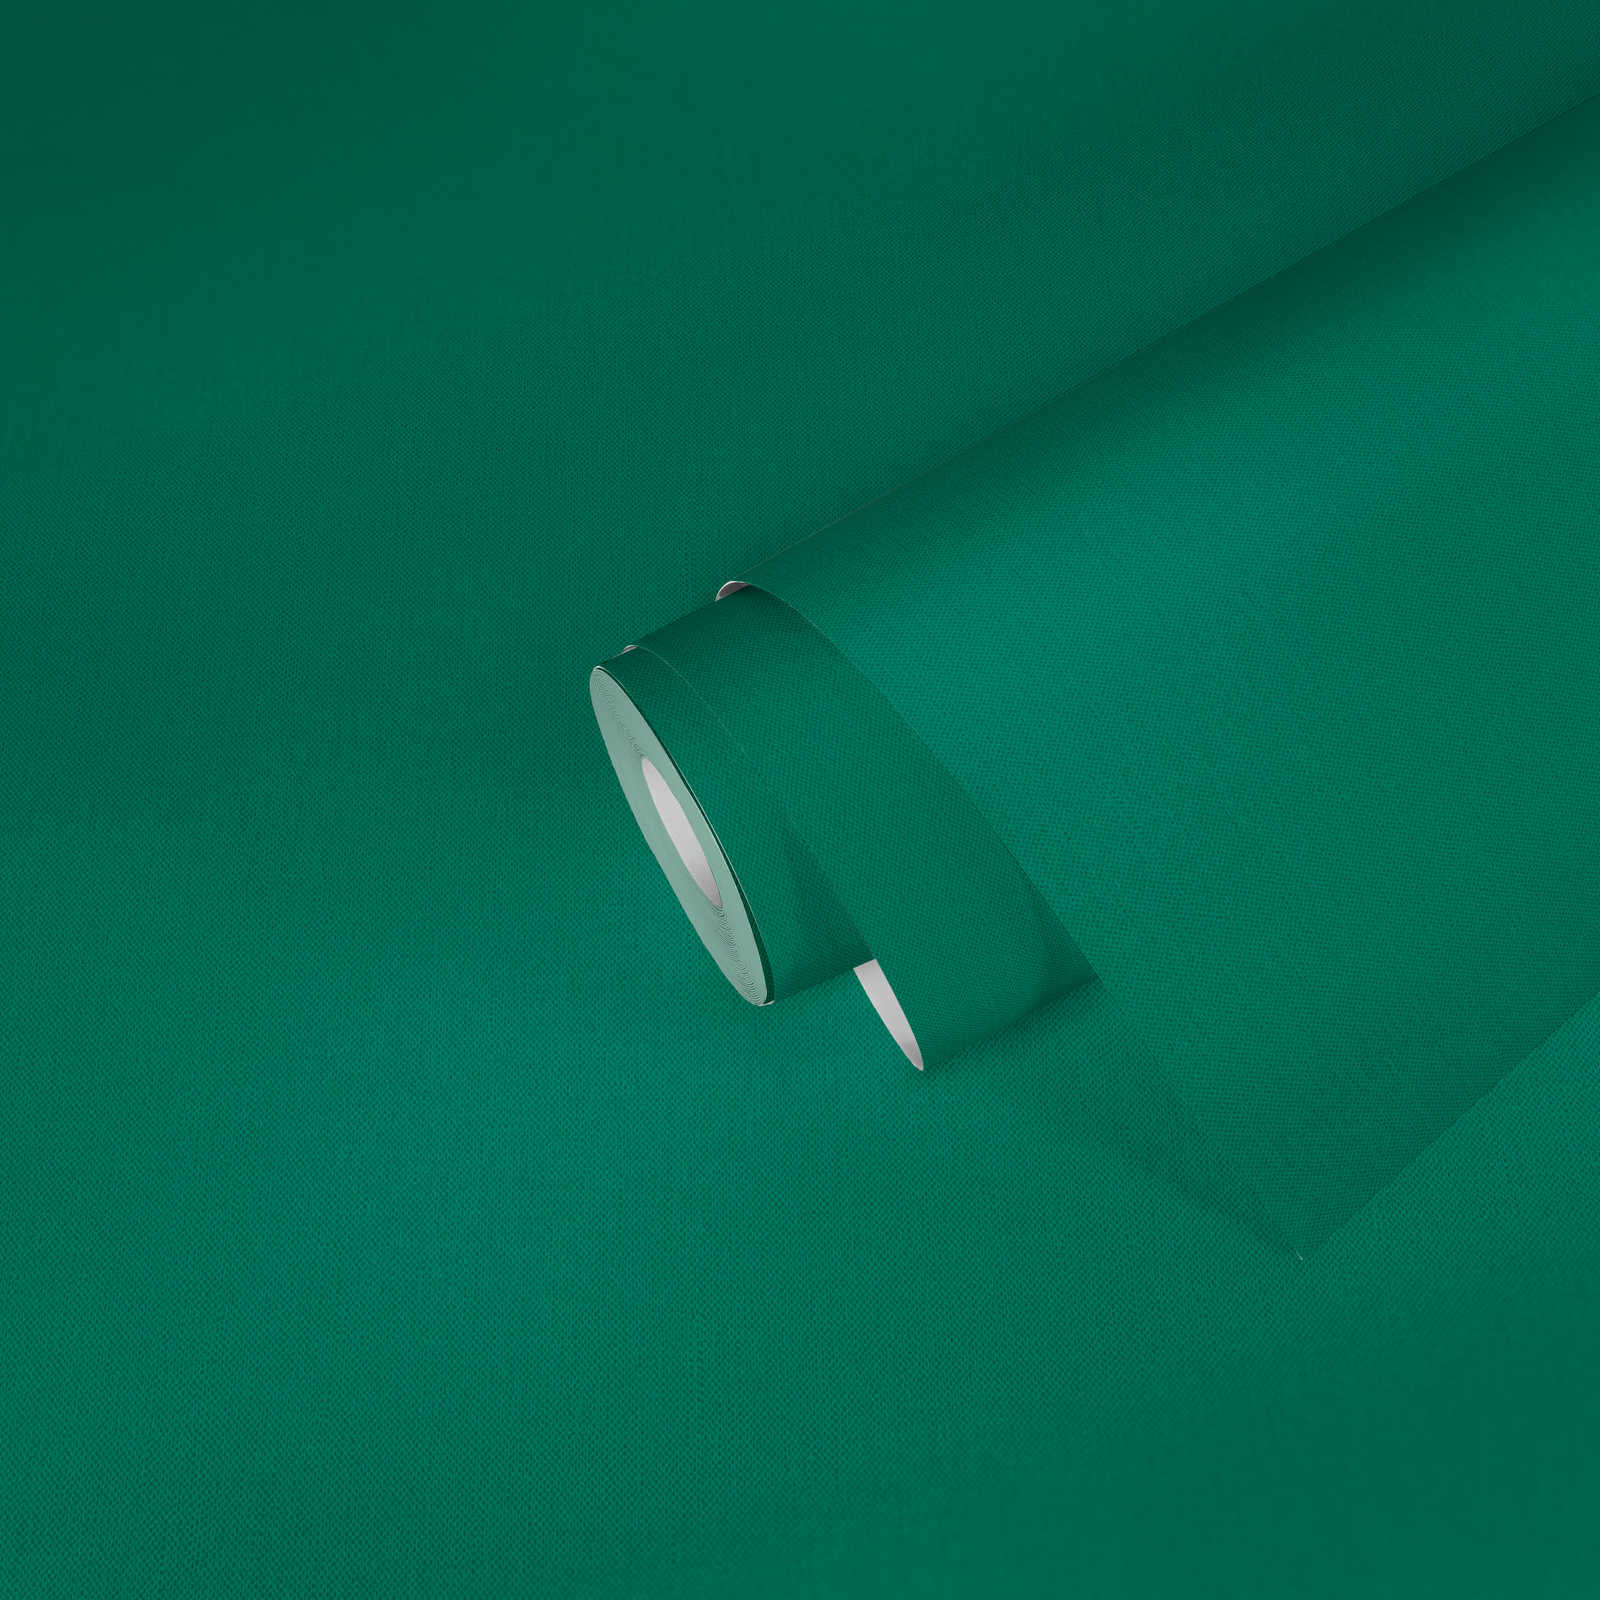             behang groen met textielstructuur mat uni signaal groen
        